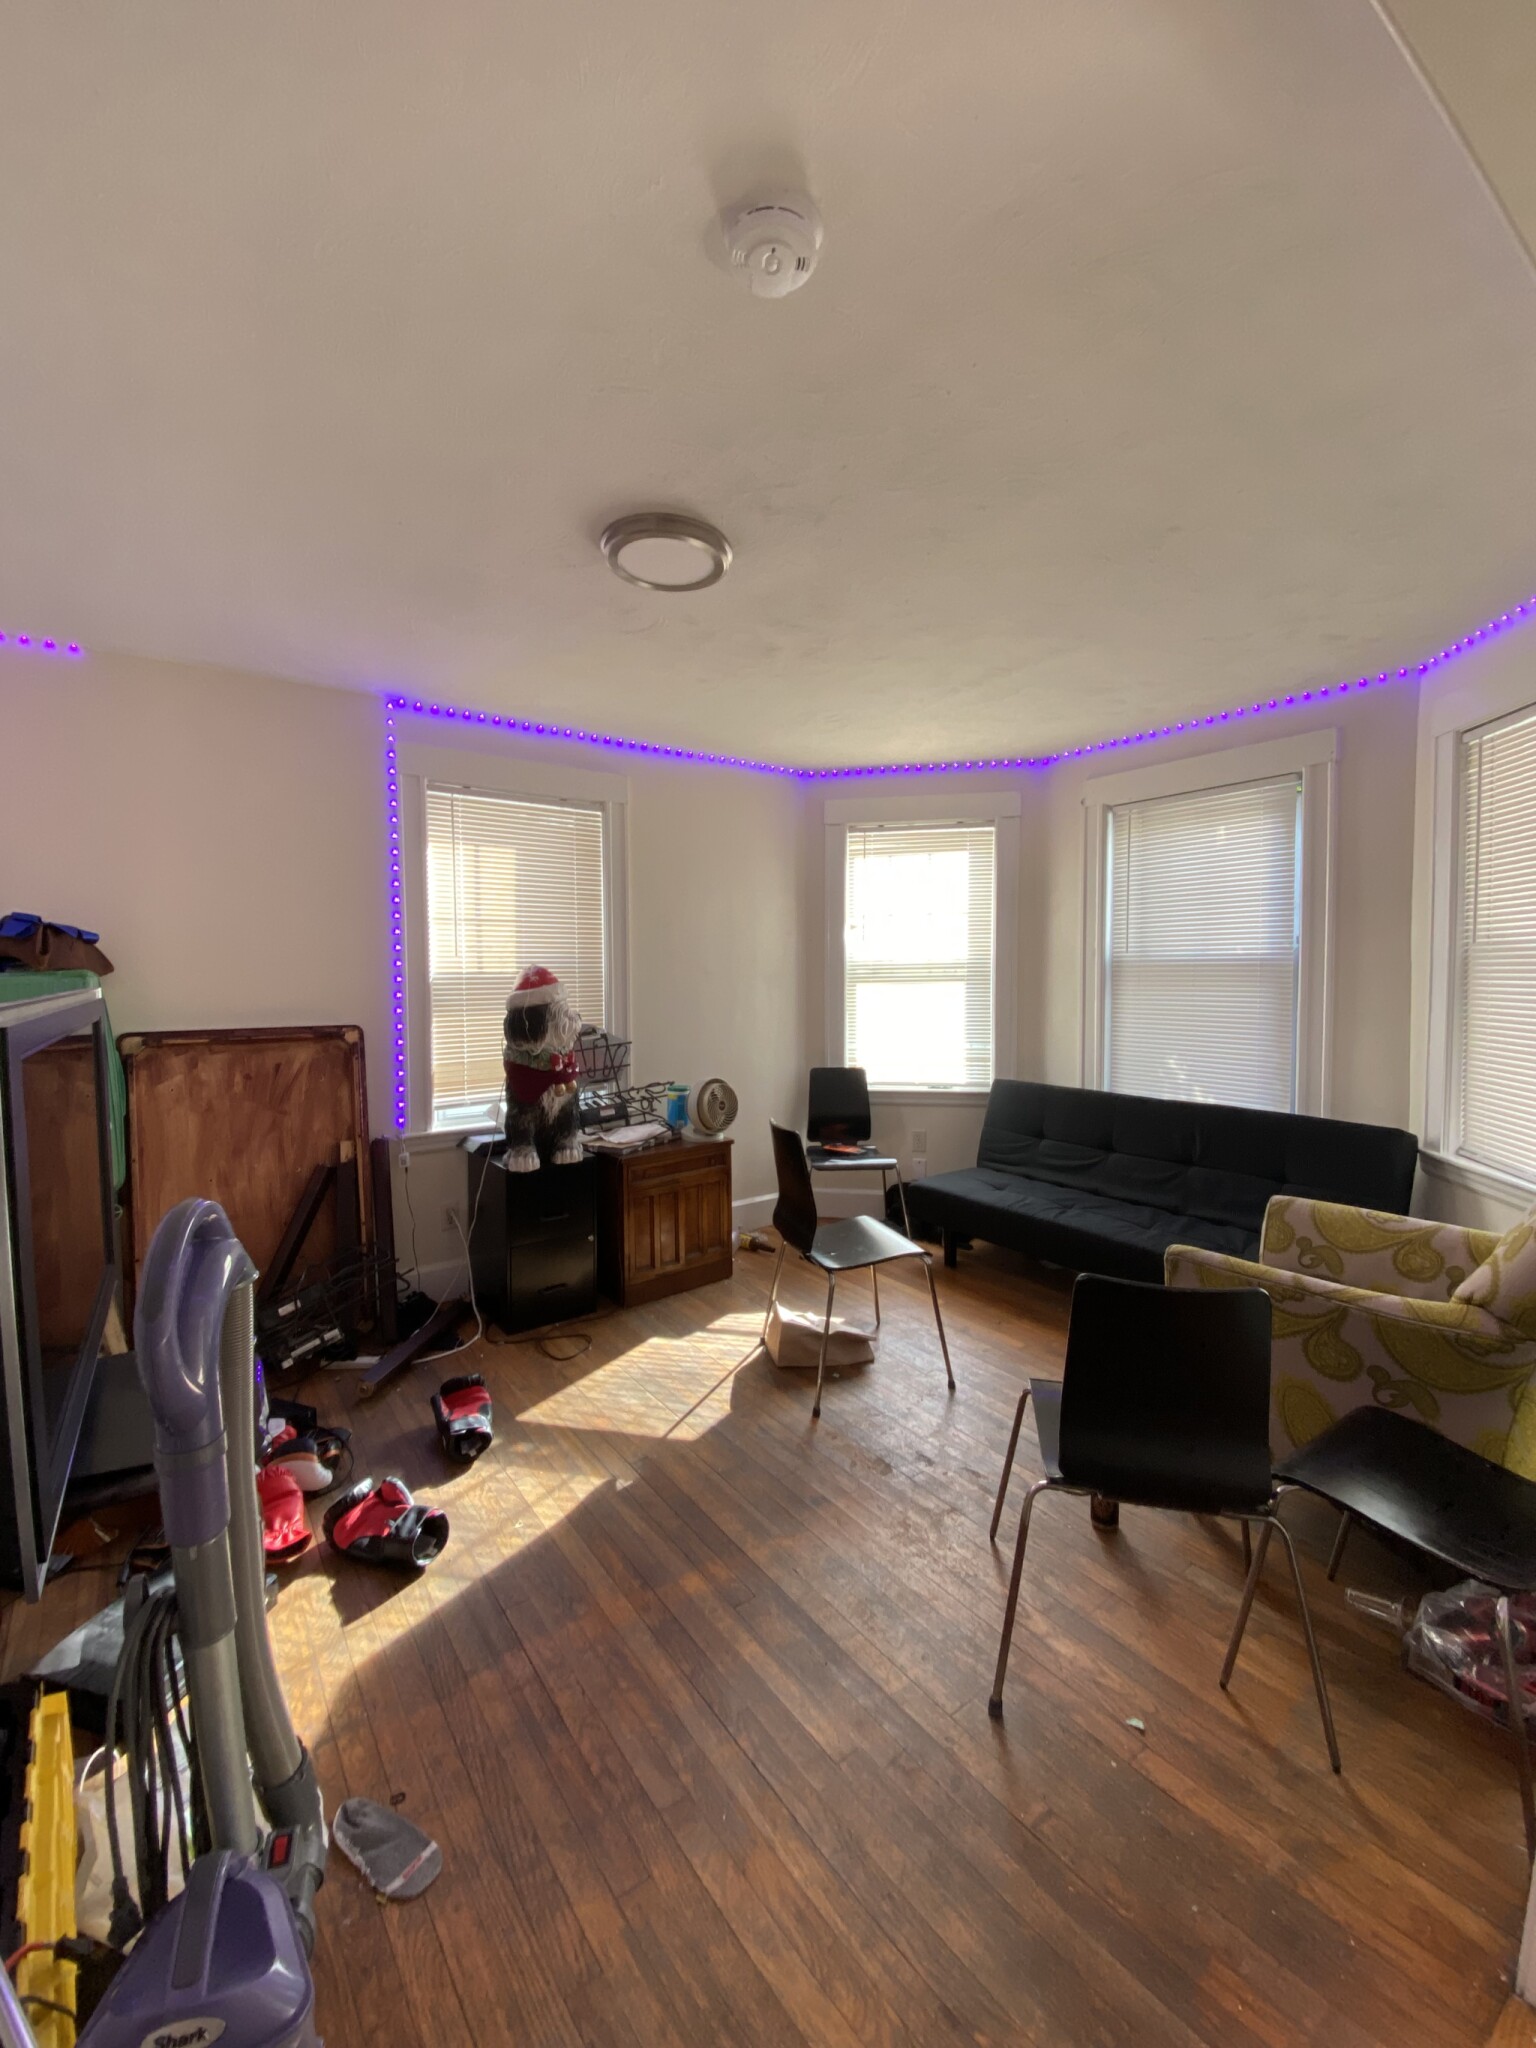 Photos of apartment on Sawyer Ter.,Boston MA 02134